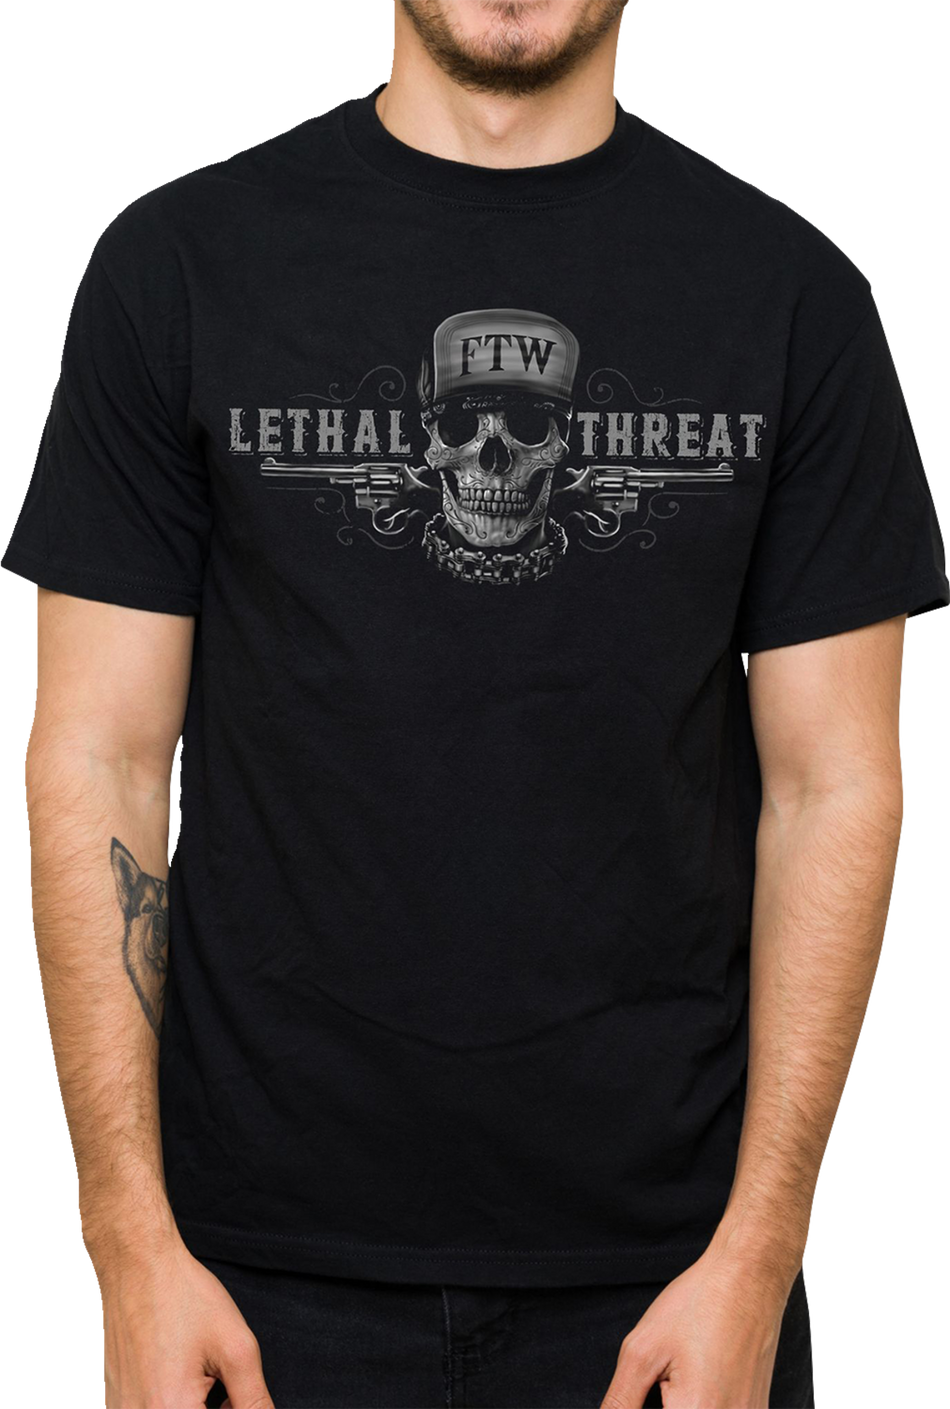 LETHAL THREAT Friend or Foe T-Shirt - Black - 2XL LT20904XXL